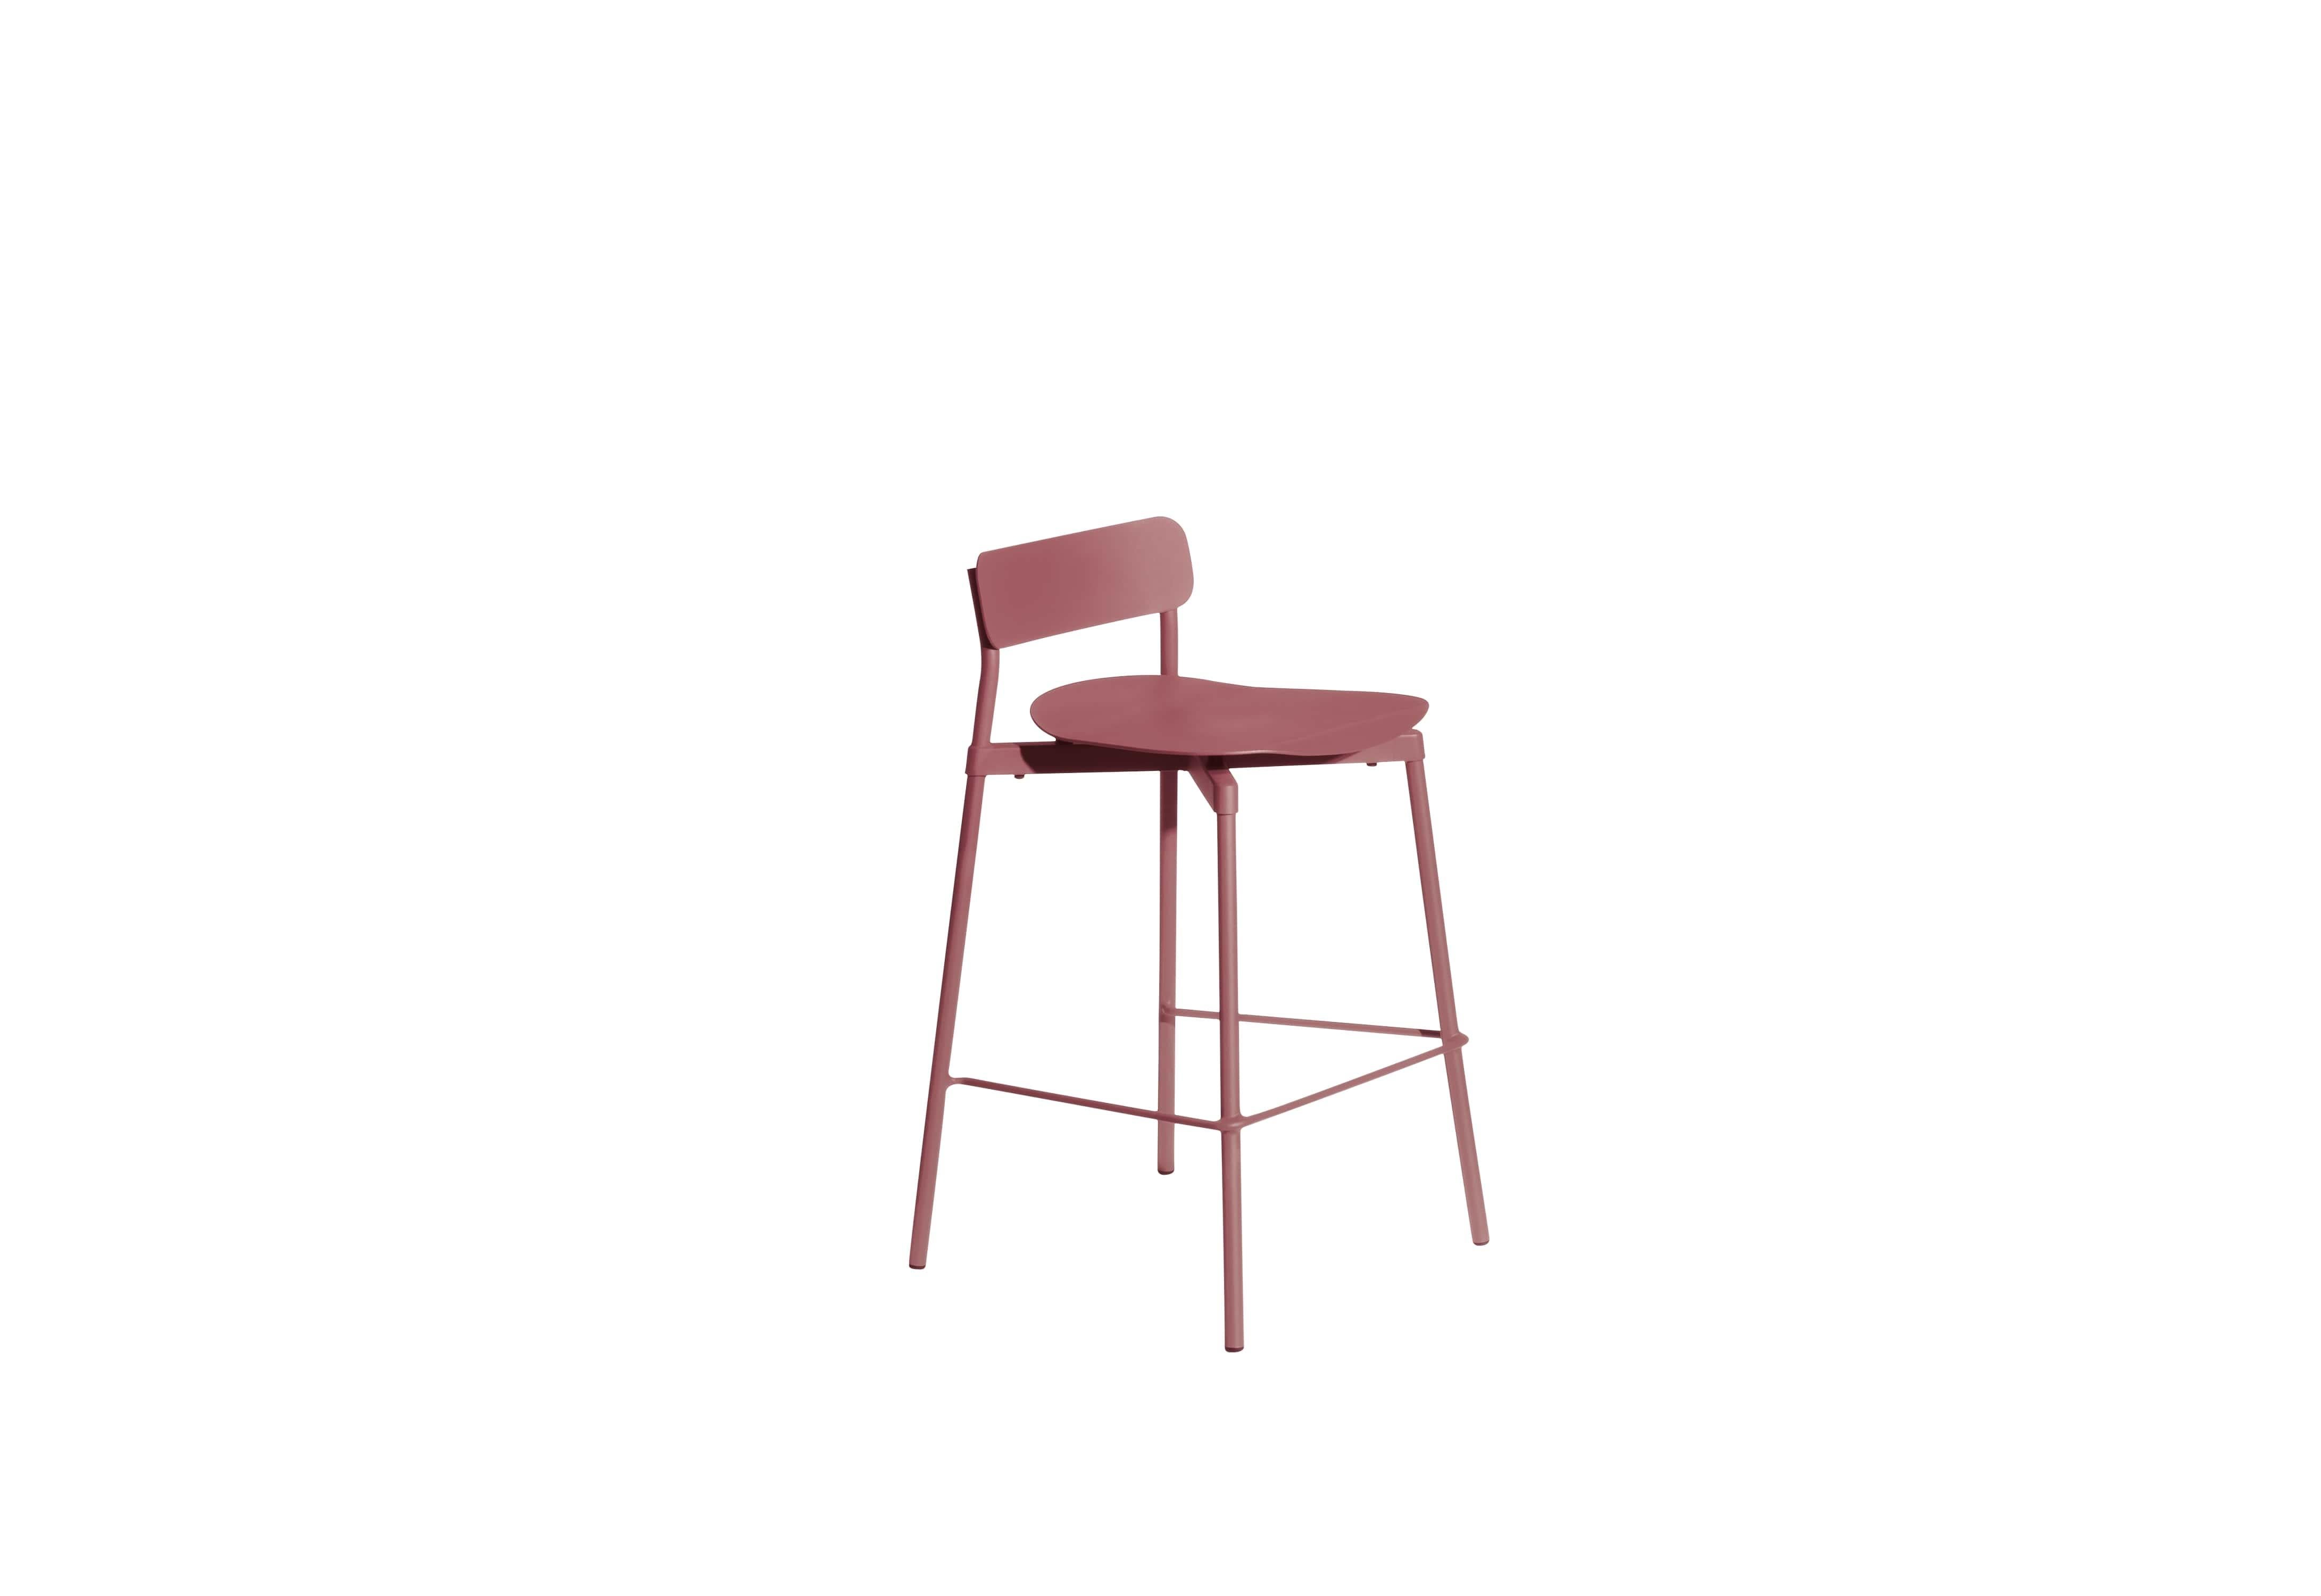 Petite Friture Small Fromme Tabouret de bar en aluminium brun-rouge par Tom Chung, 2020

La collection S/One se distingue par sa ligne épurée et son design compact. Les absorbeurs placés sous les sièges leur confèrent une flexibilité souple et très